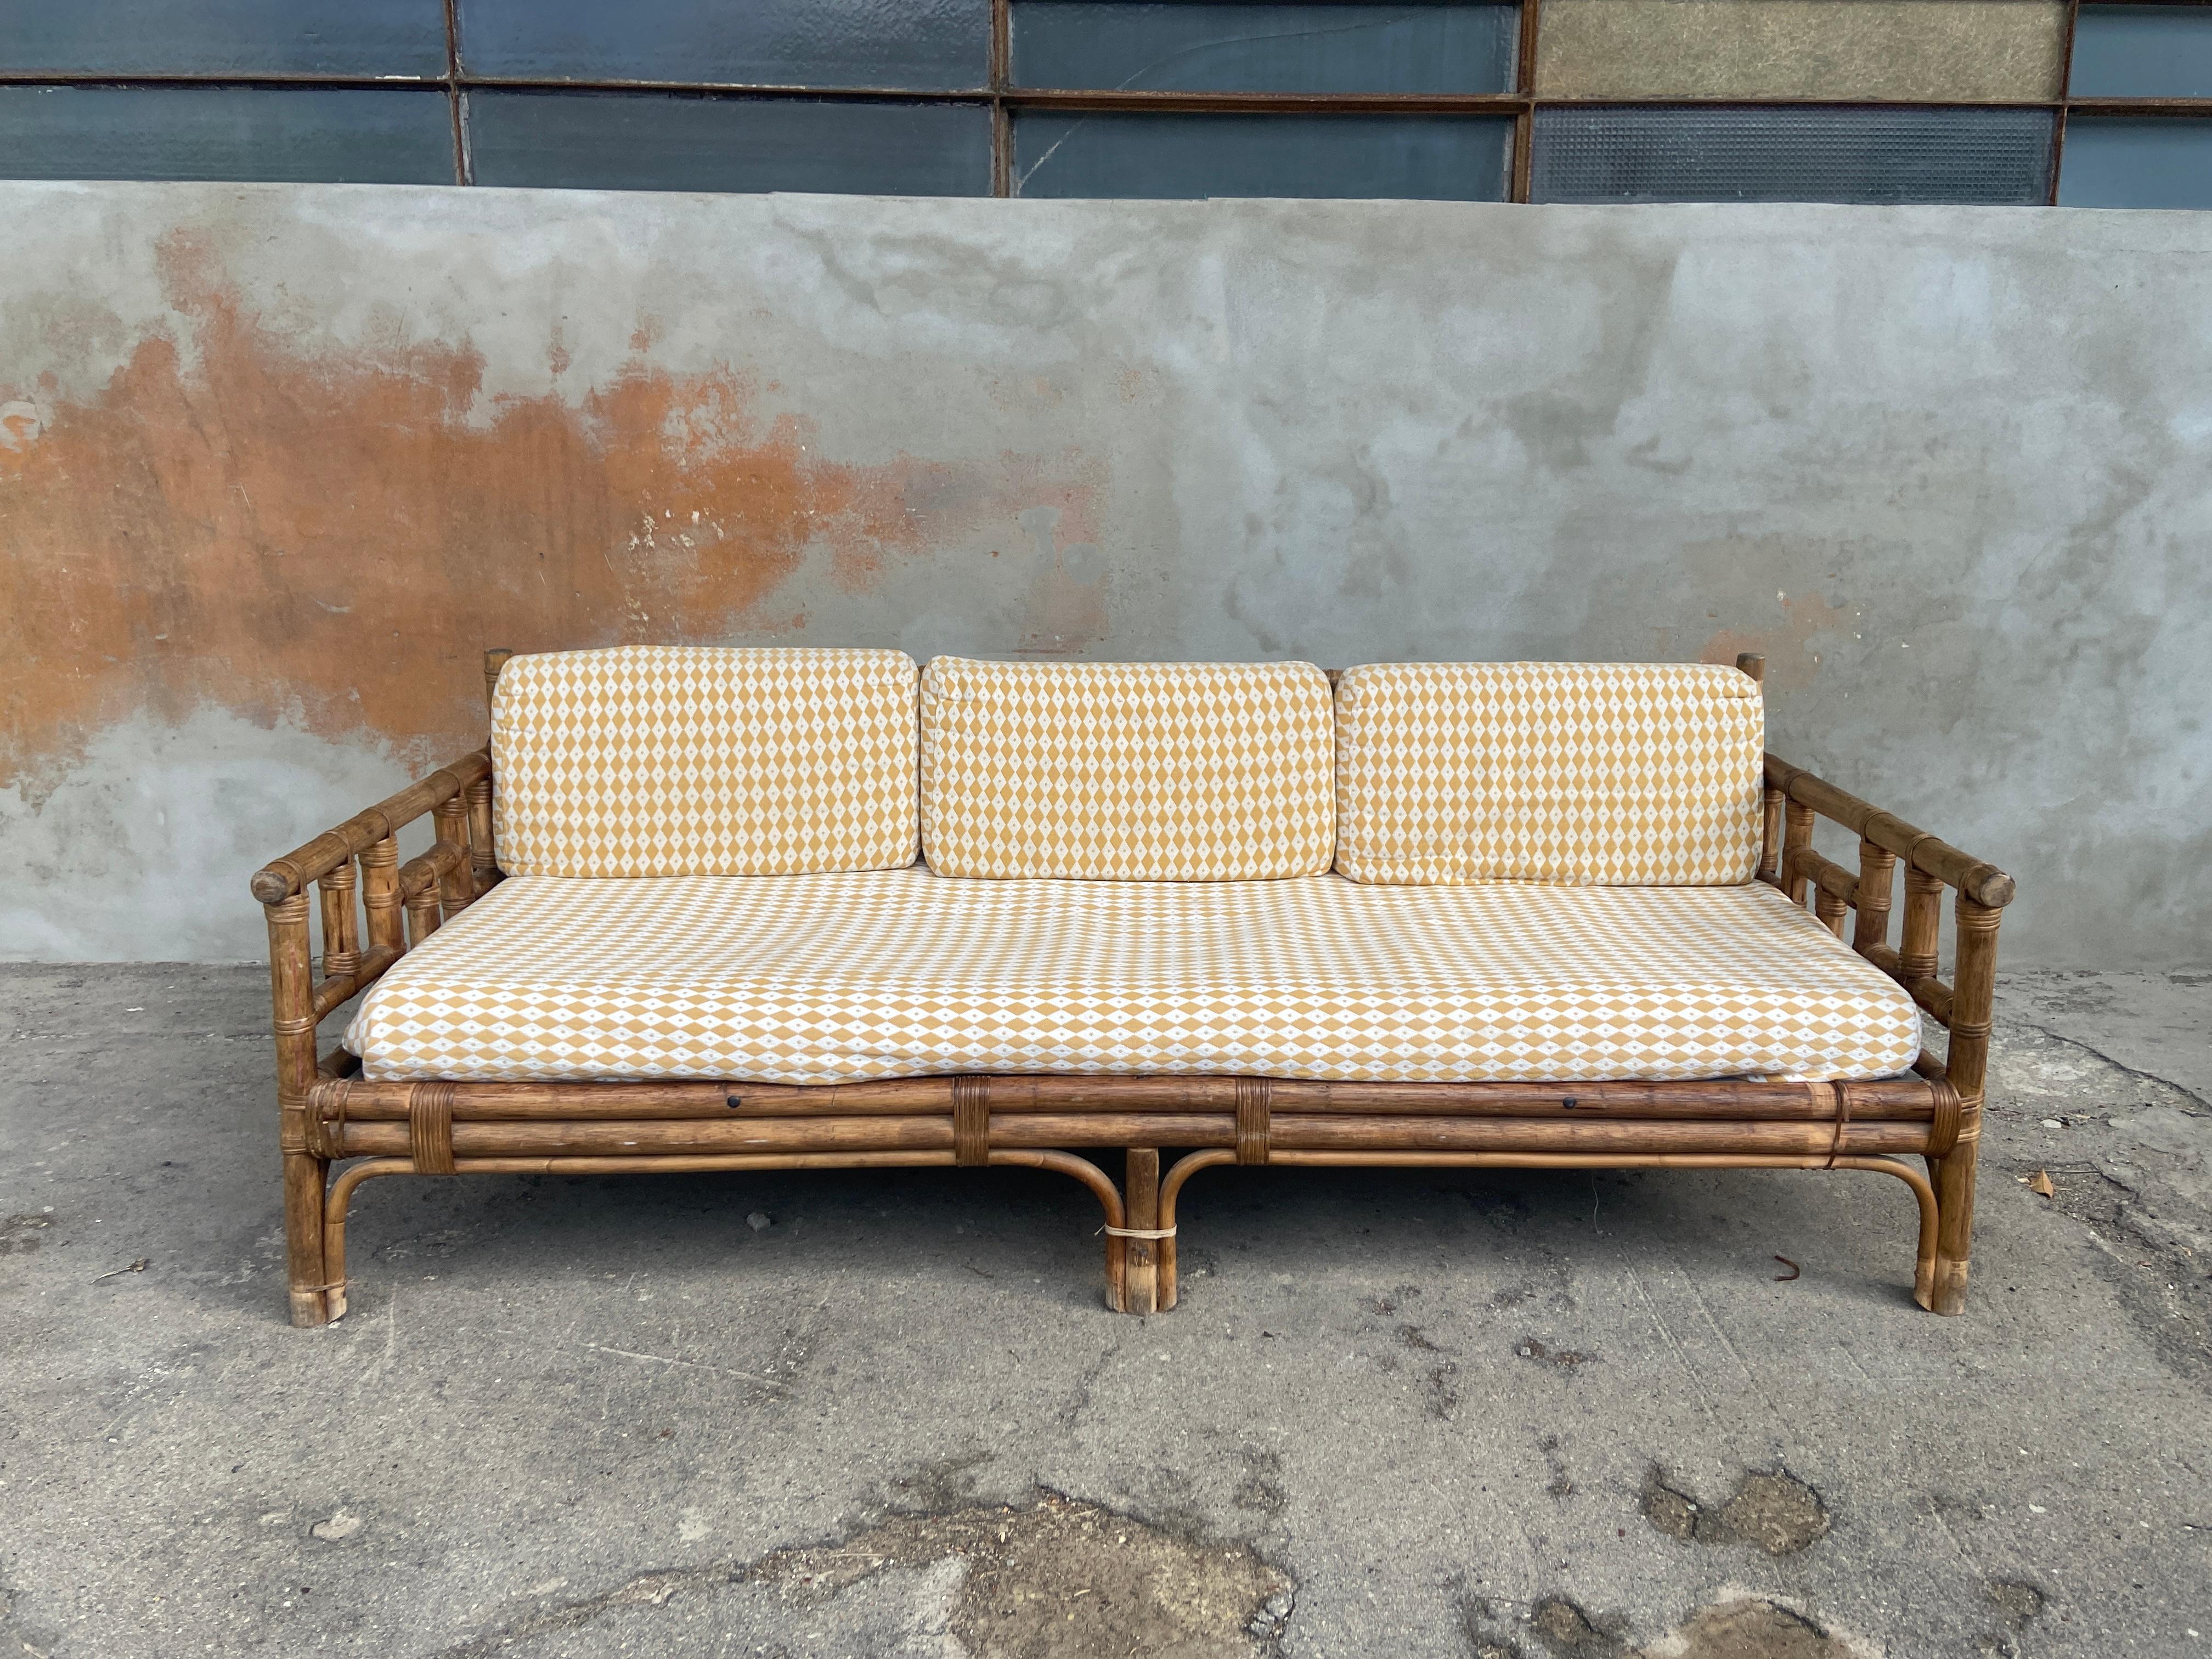 Modernes italienisches Vivai del Sud-Bambussofa aus der Jahrhundertmitte mit originalen, mit Baumwollstoff bezogenen Kissen.
Das Sofa ist in gutem Vintage-Zustand mit leichten Alters- und Gebrauchsspuren. Die Struktur ist solide.
Kosten für die